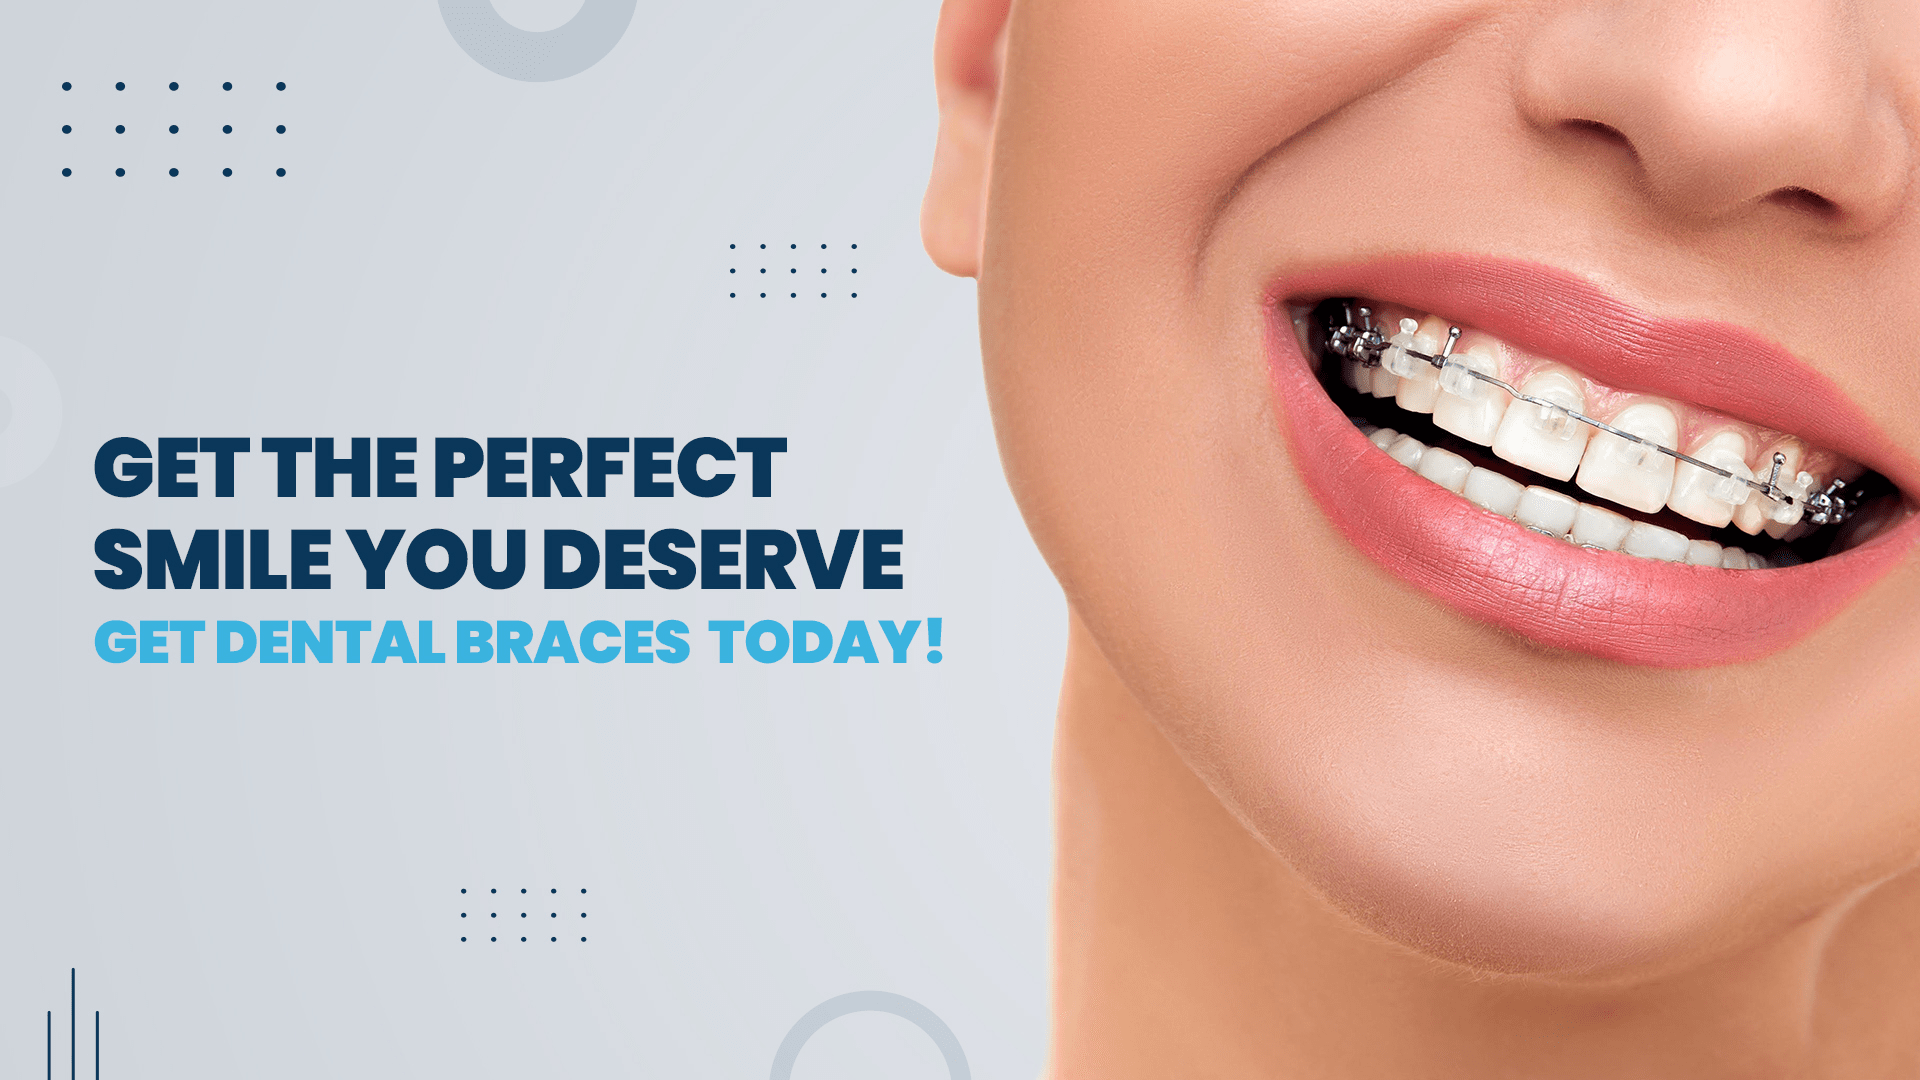 Dental Braces or Teeth Braces